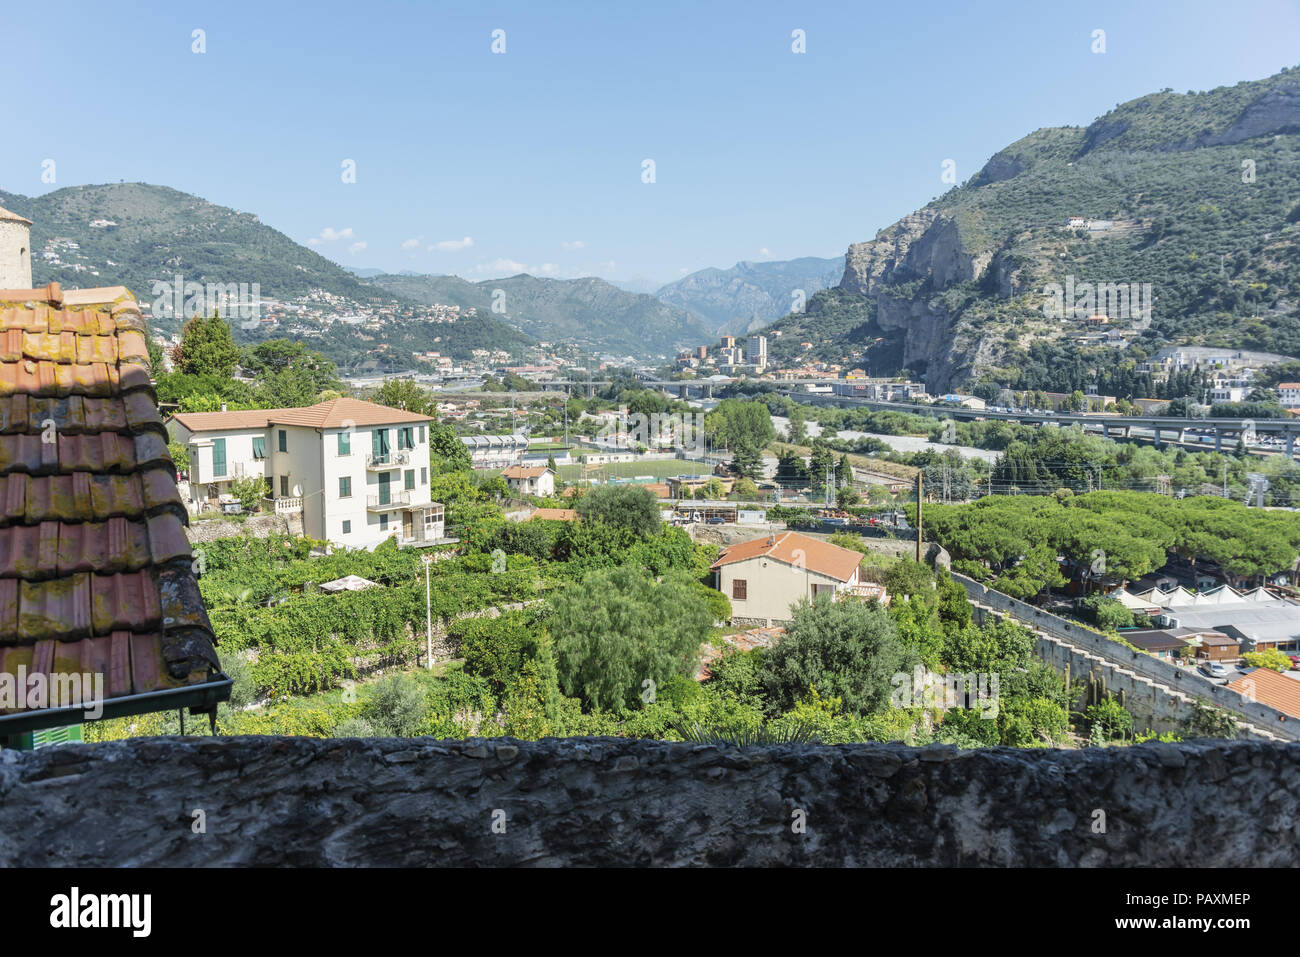 Italy Liguria Ventimiglia valley of the Roia river 2 Stock Photo